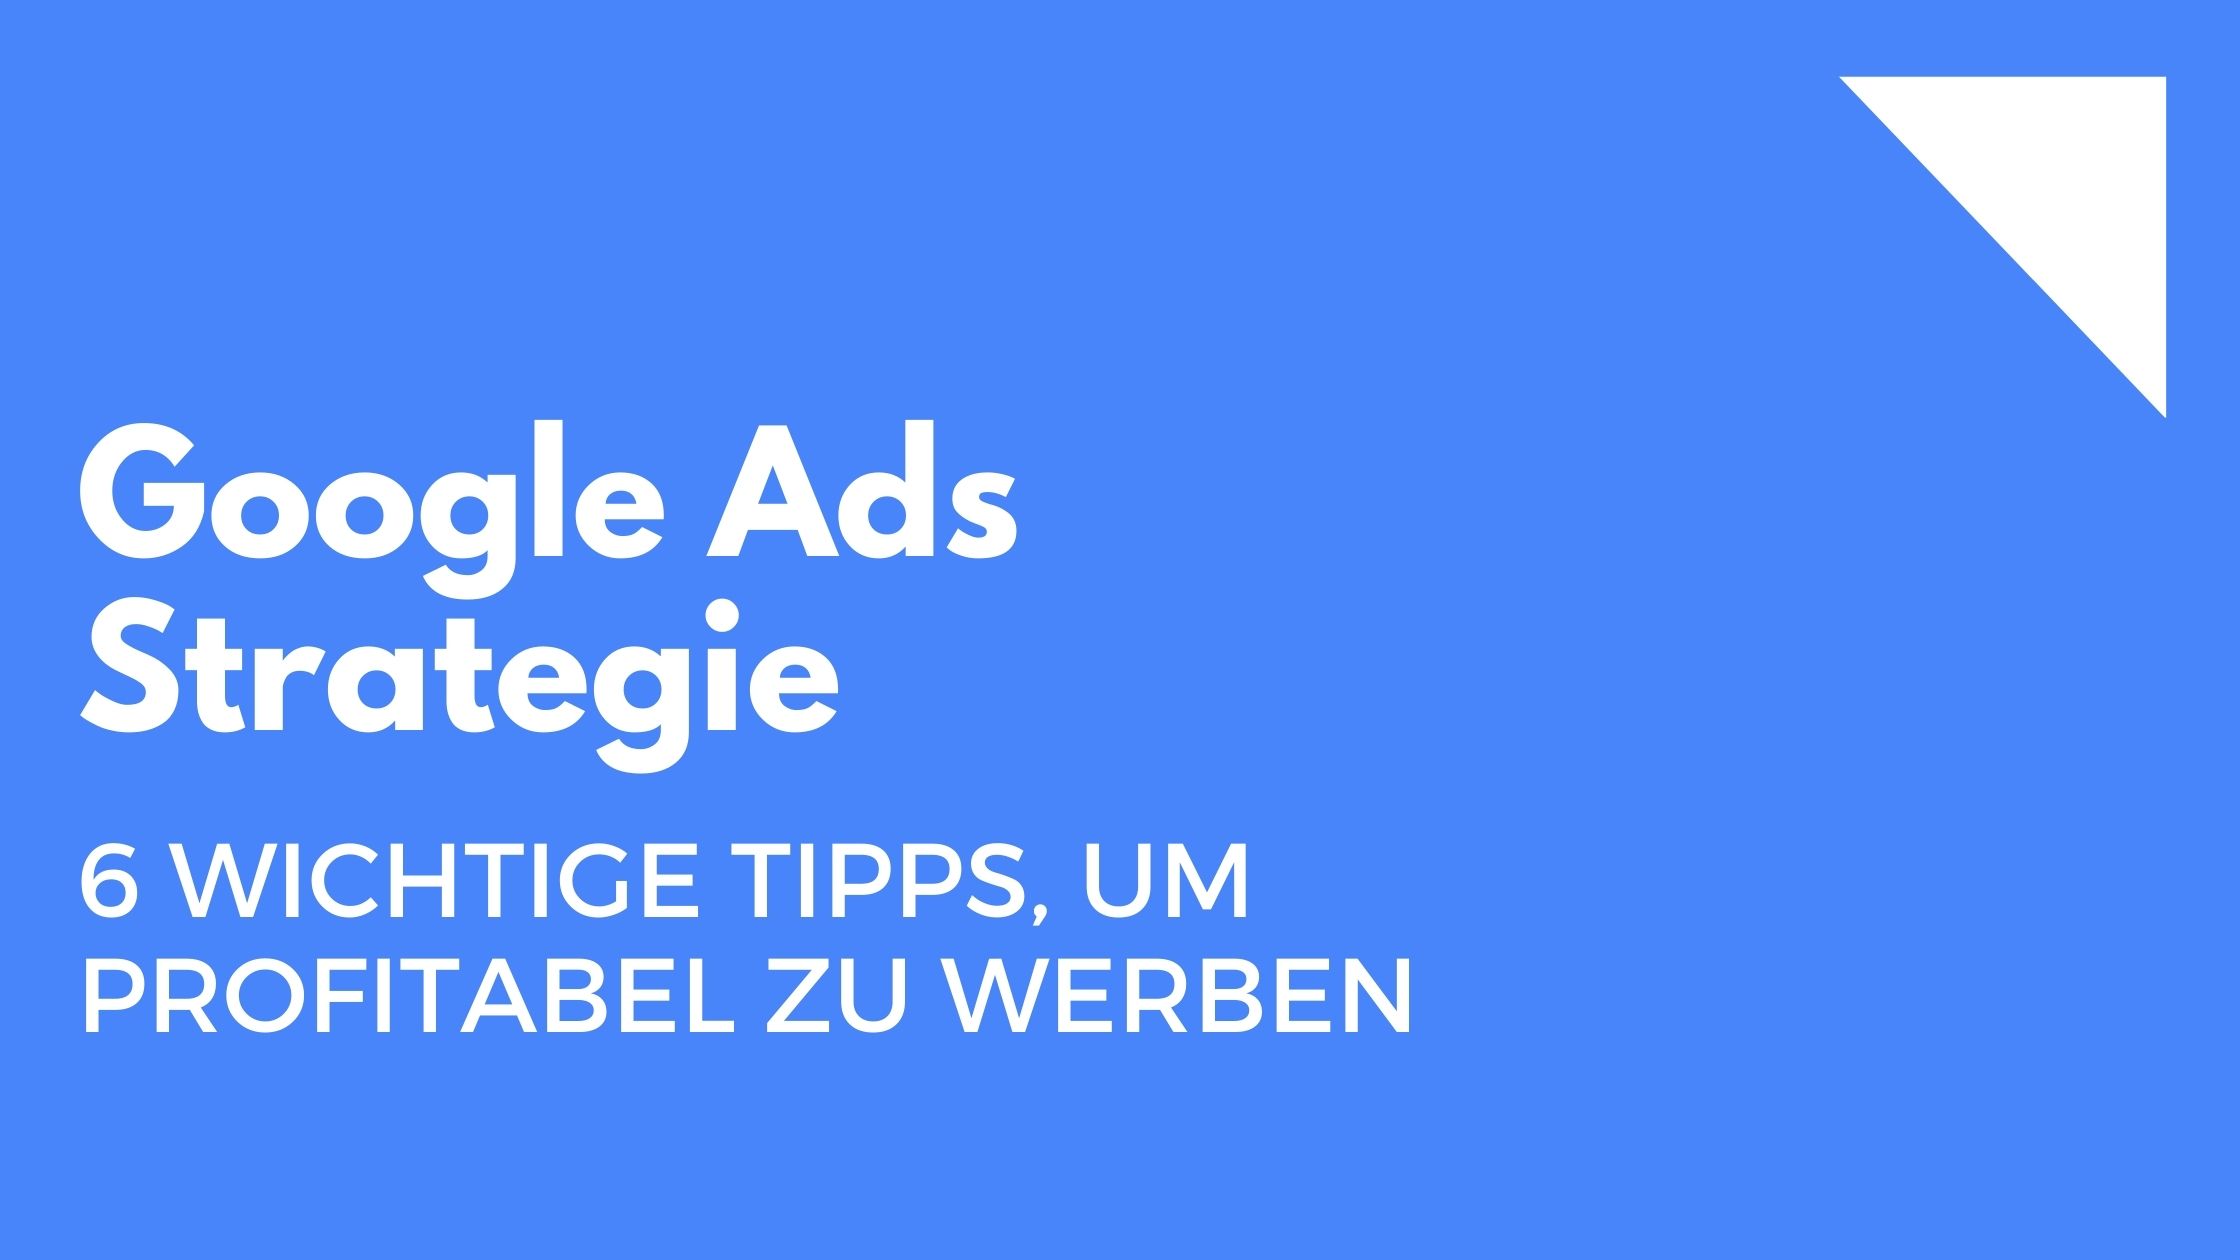 Google Ads Strategie: 6 wichtige Tipps, um profitabel zu werben